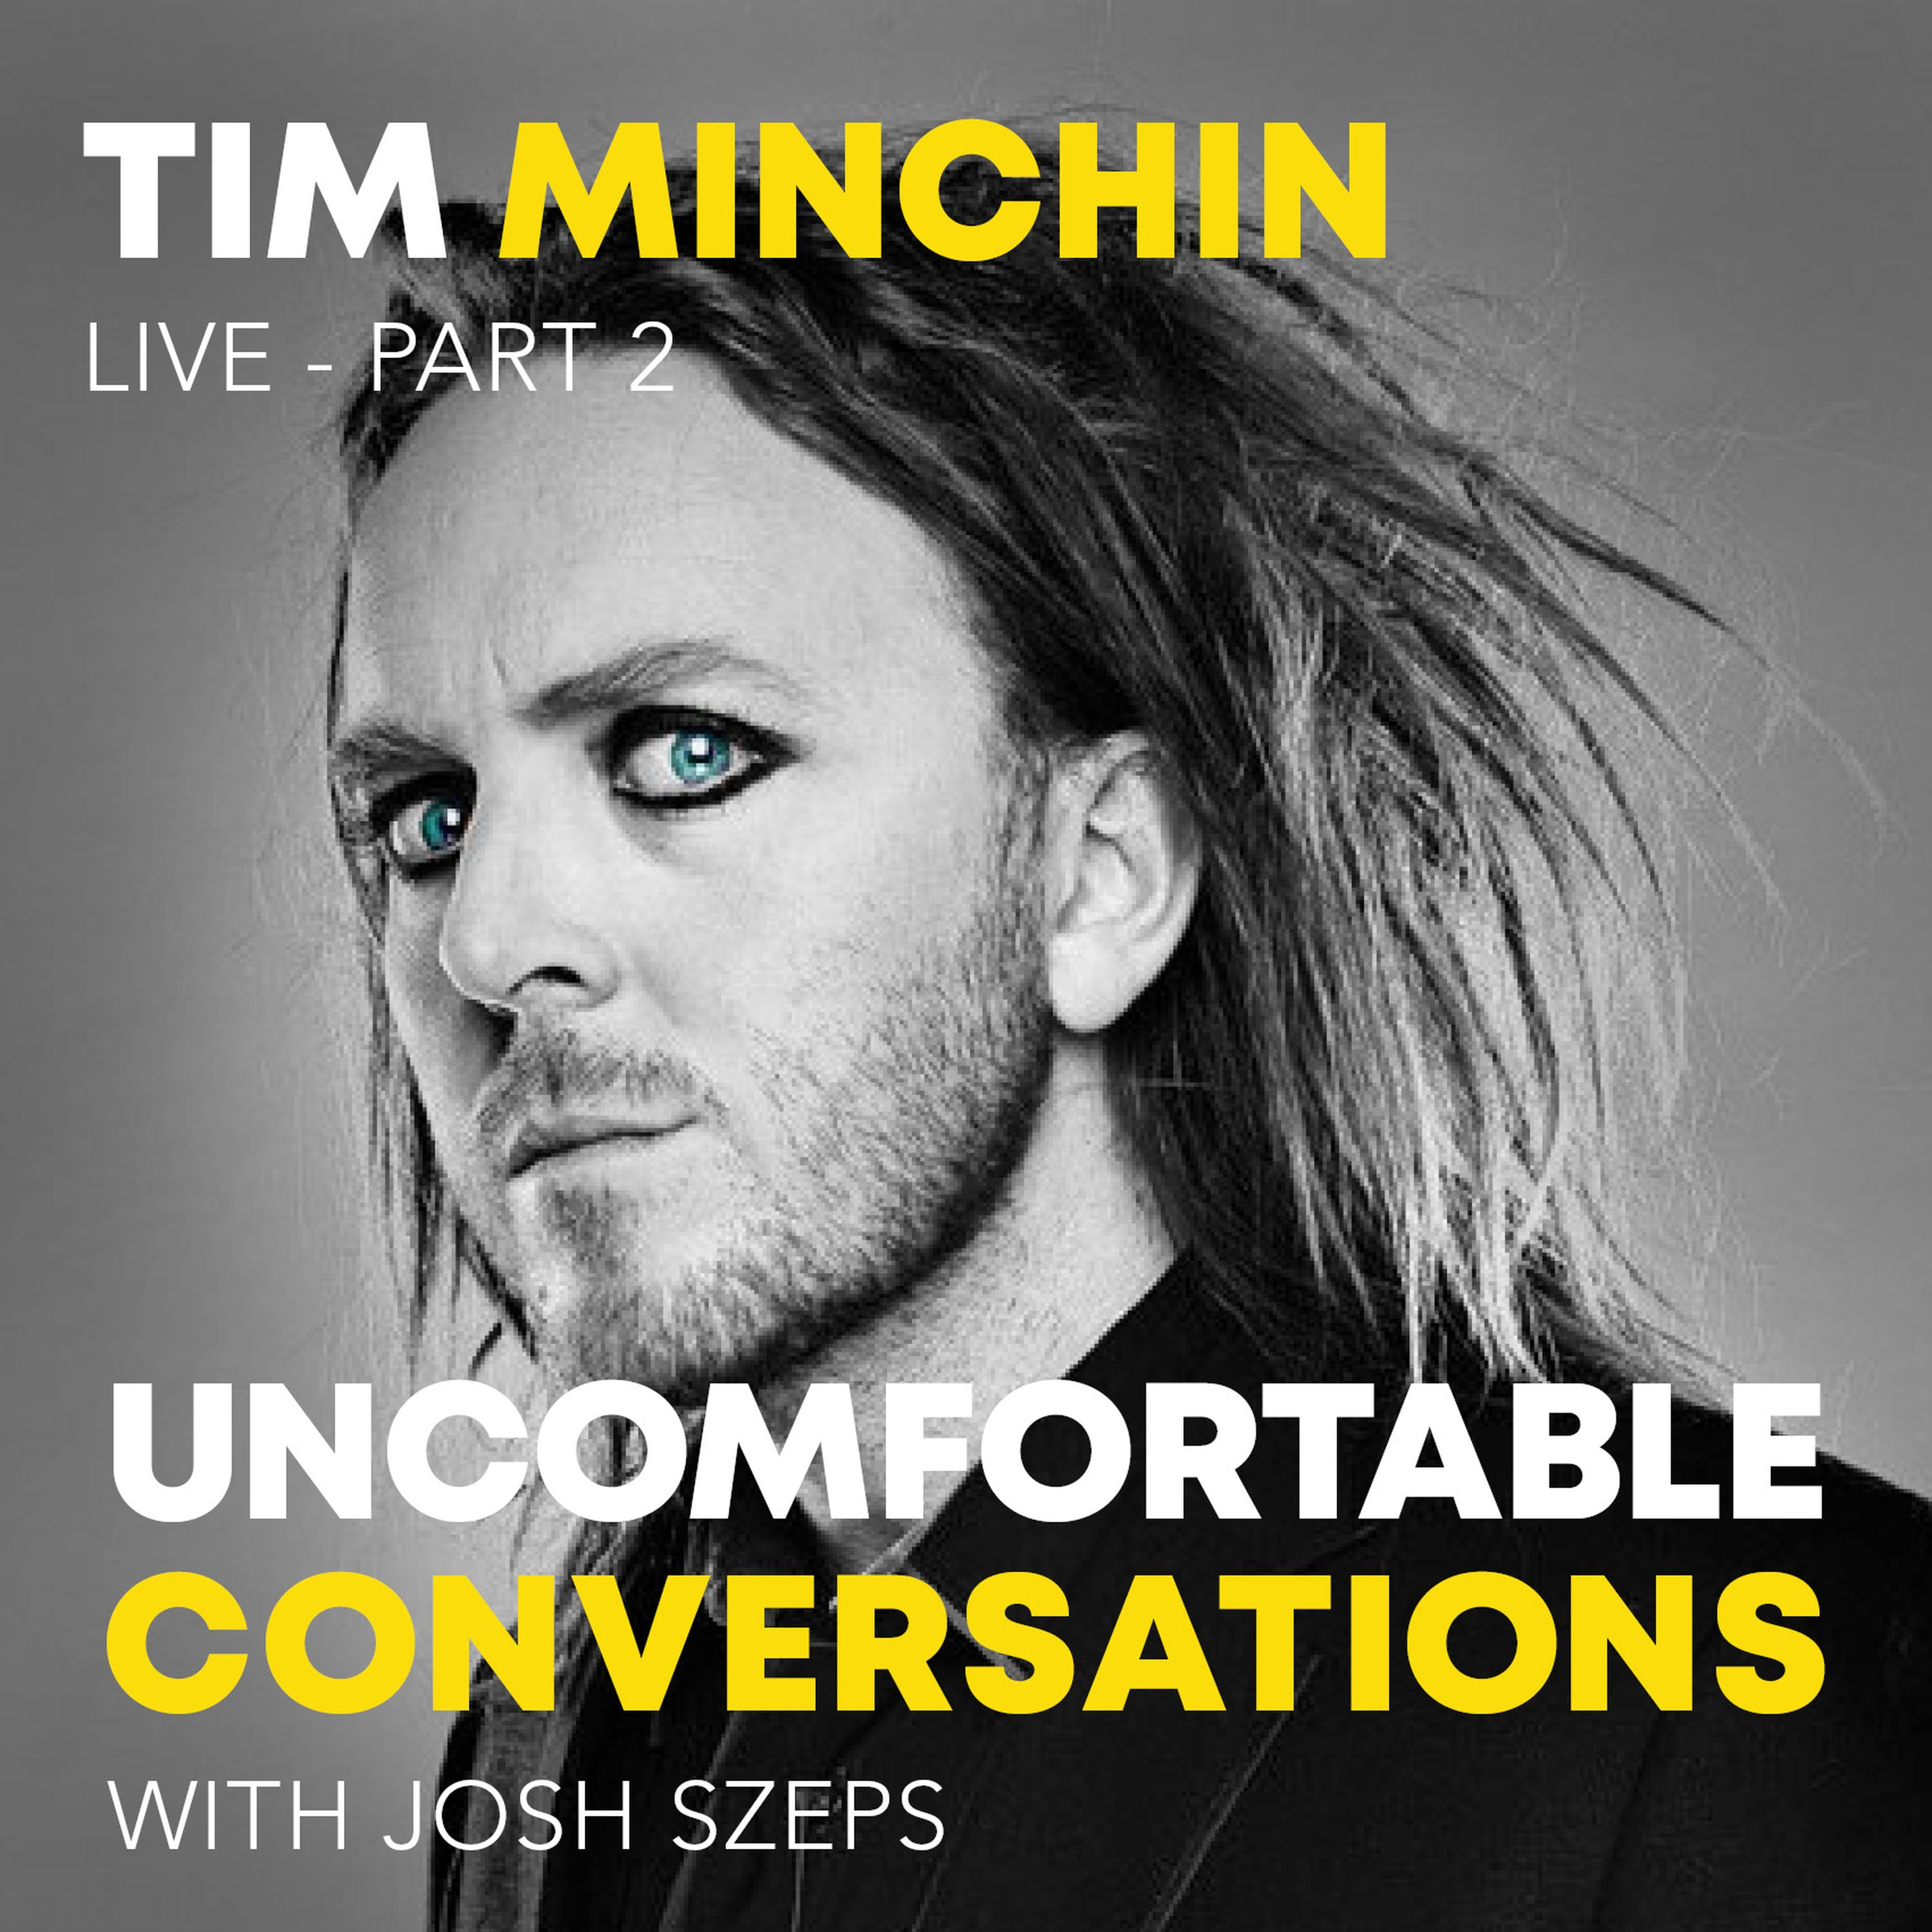 Tim Minchin Live - Part 2